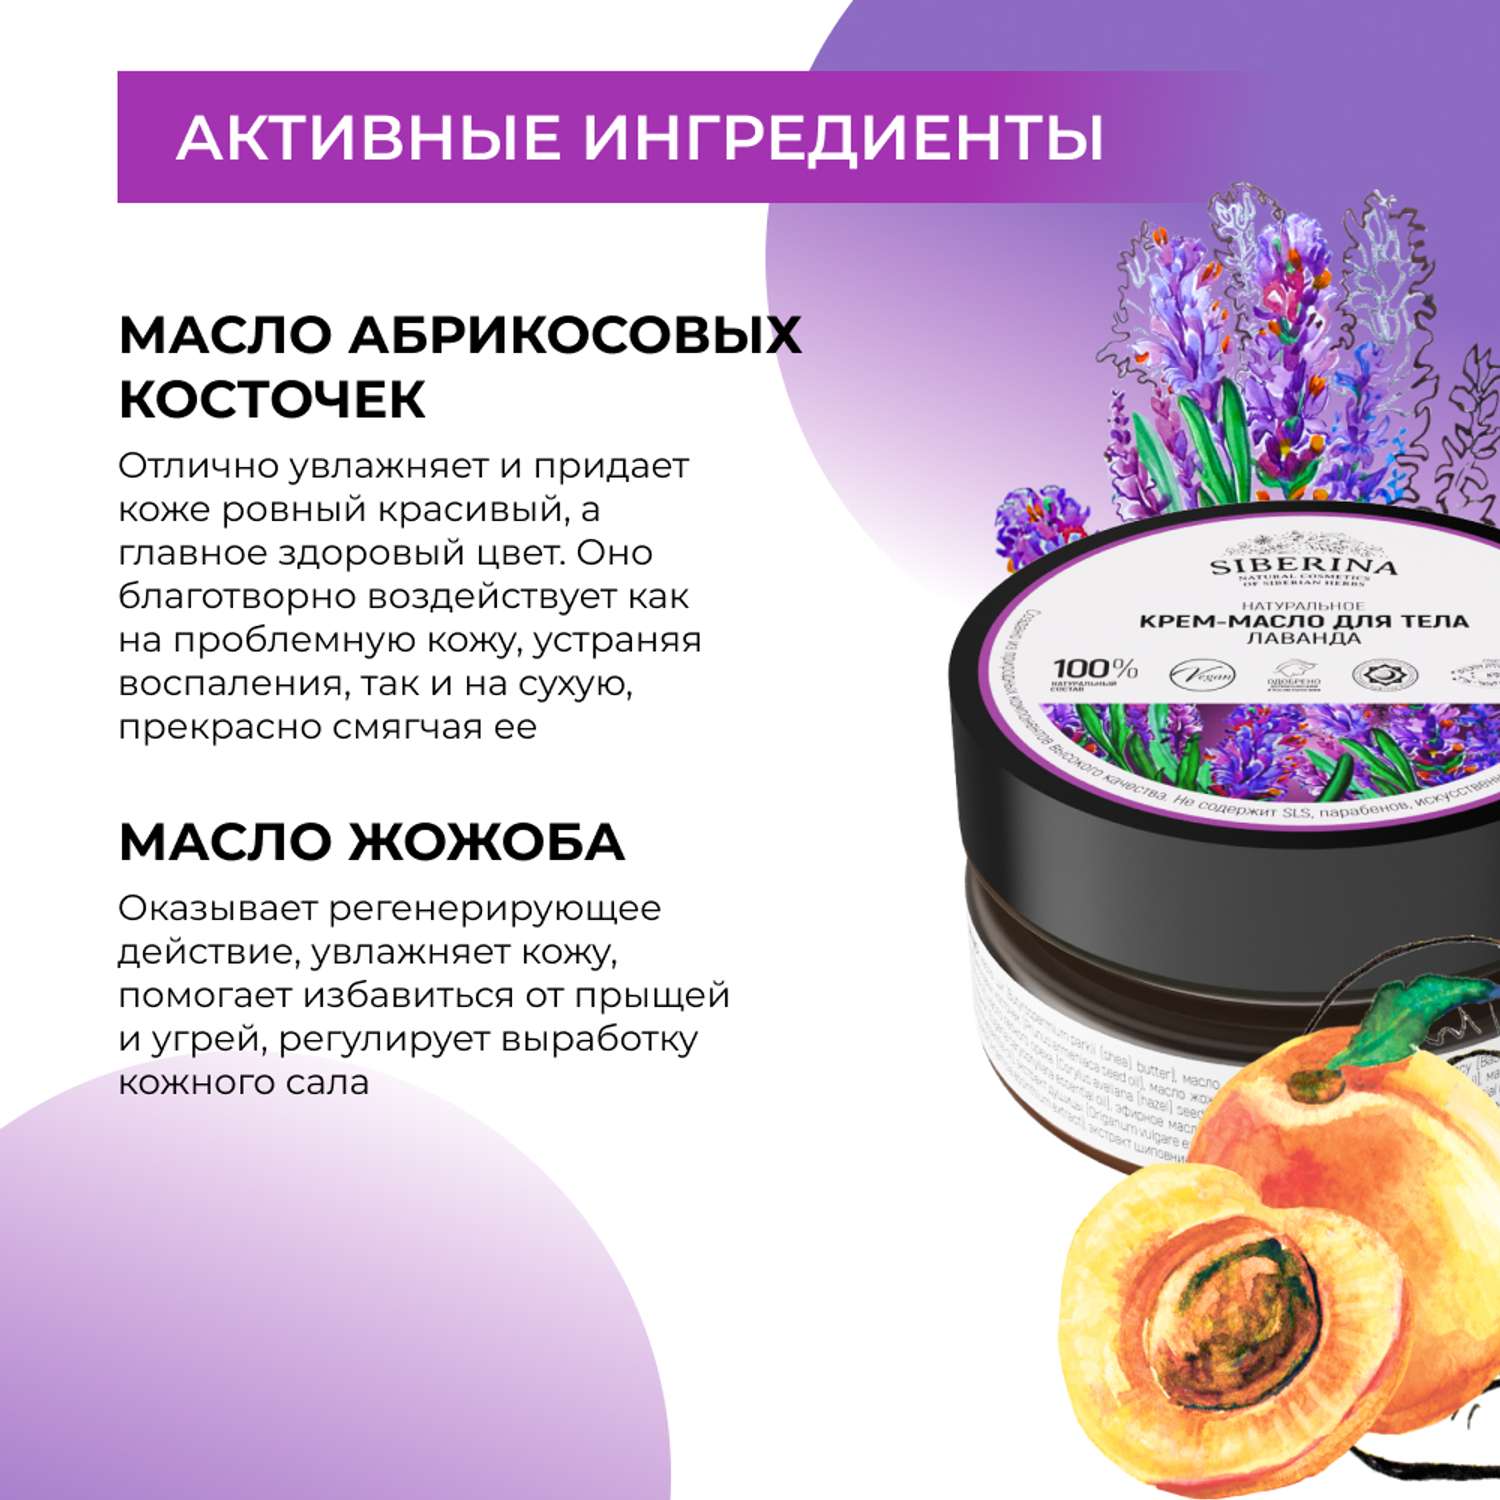 Крем-масло Siberina натуральное «Лаванда» для тела успокаивающее 60 мл - фото 5